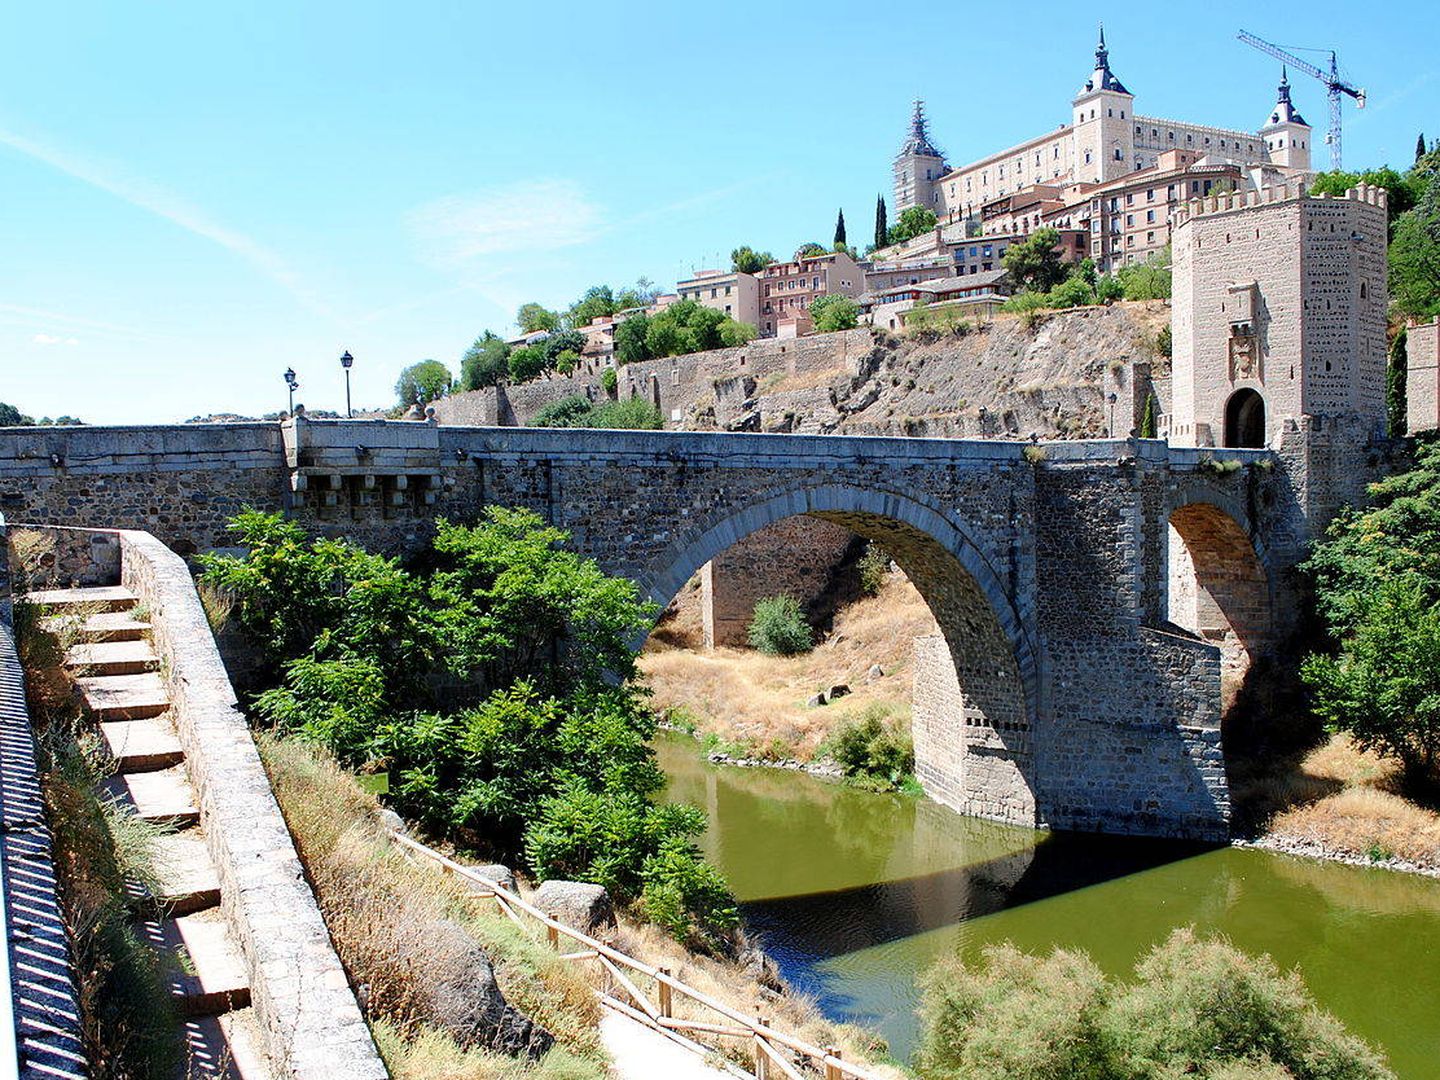 Puente de Alcántara - Nikthestoned